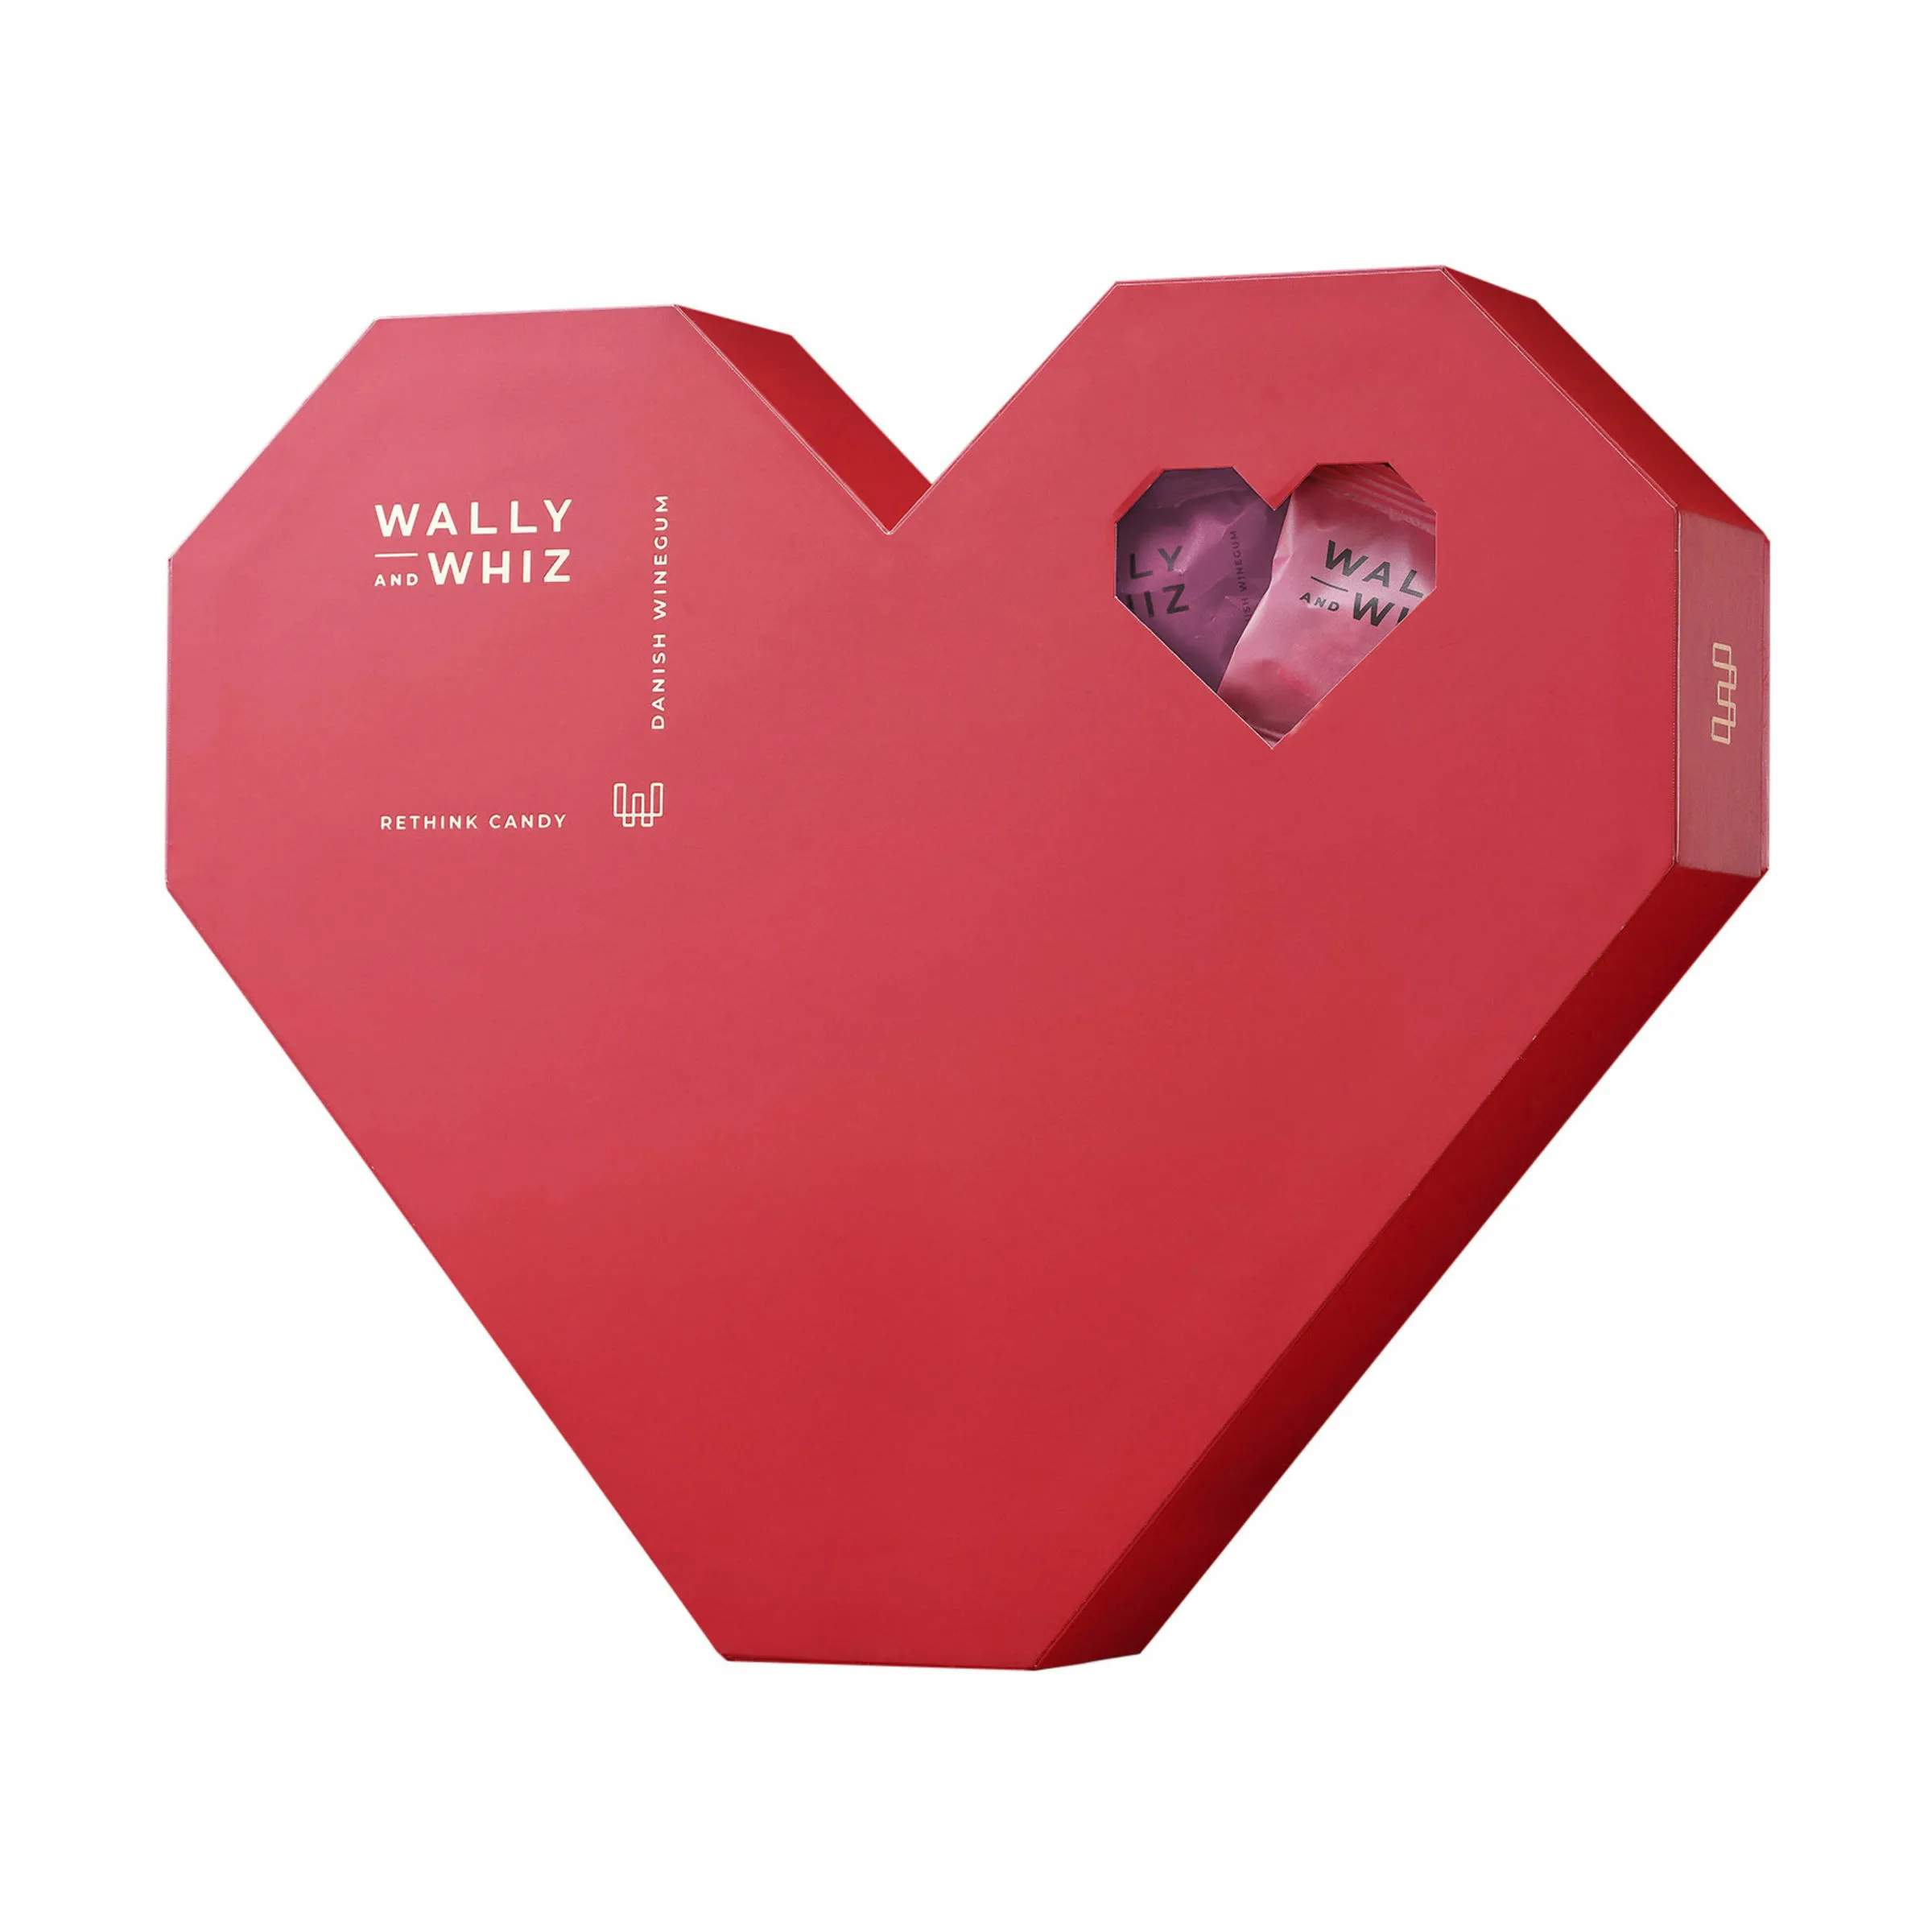 Vingummi - Heart Box, rød, large